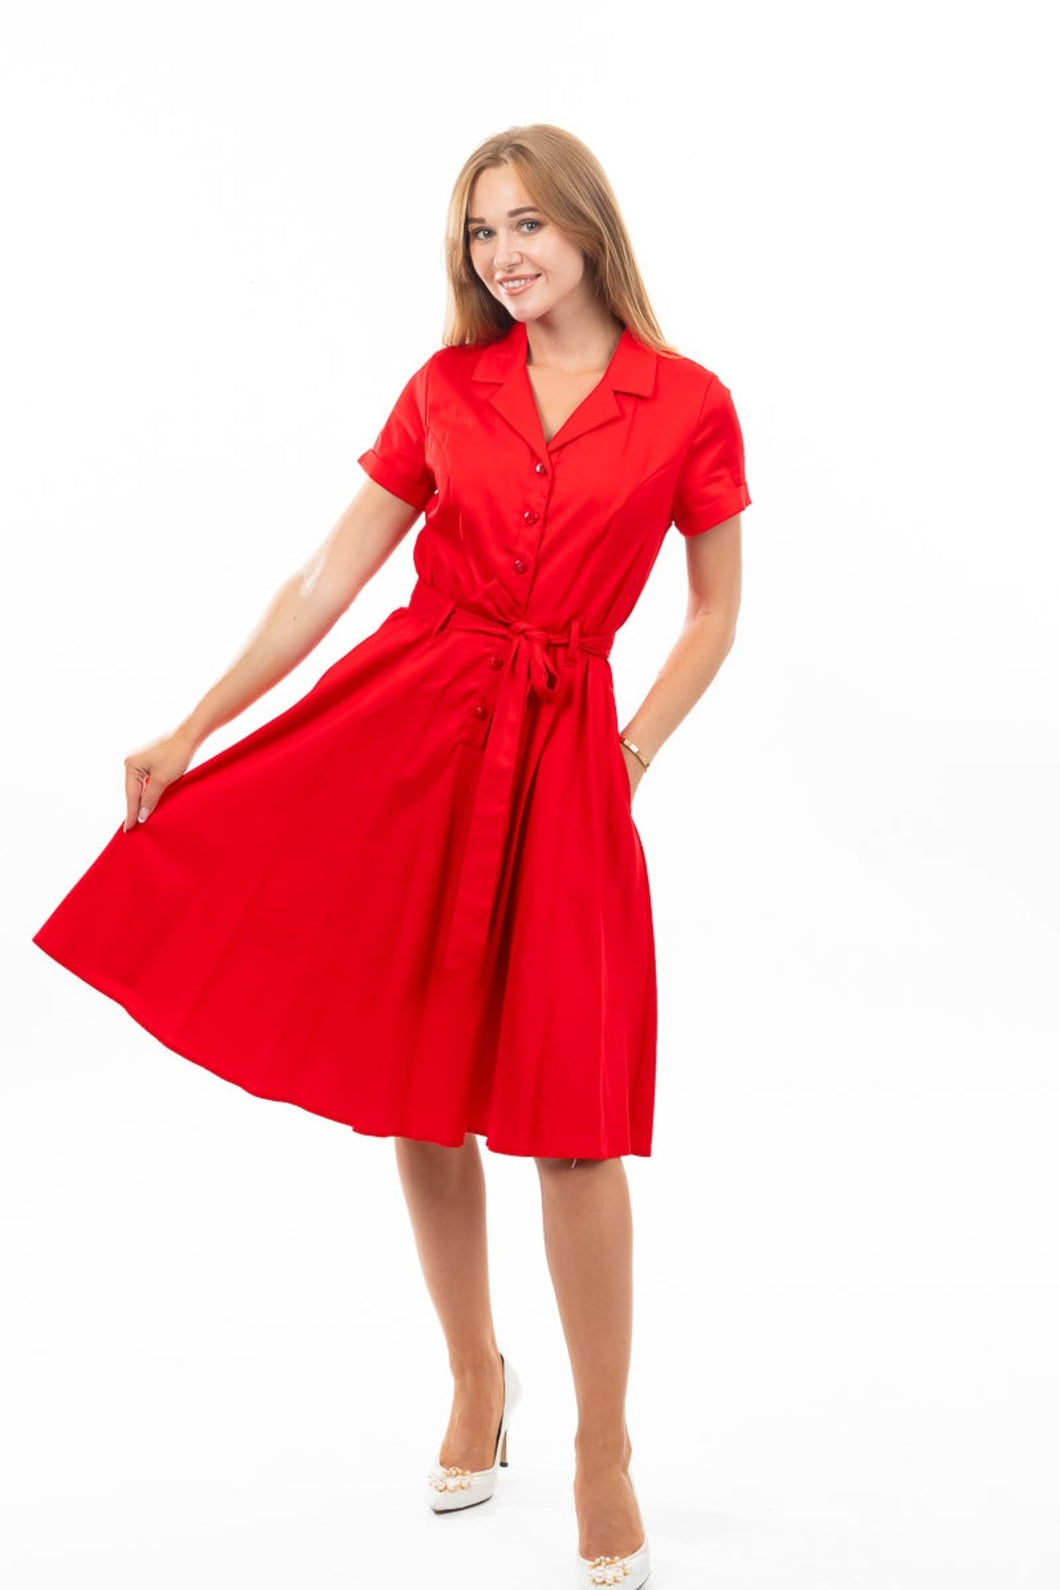 EVA ROSE- SHIRT DRESS SOLID BLACK OR RED